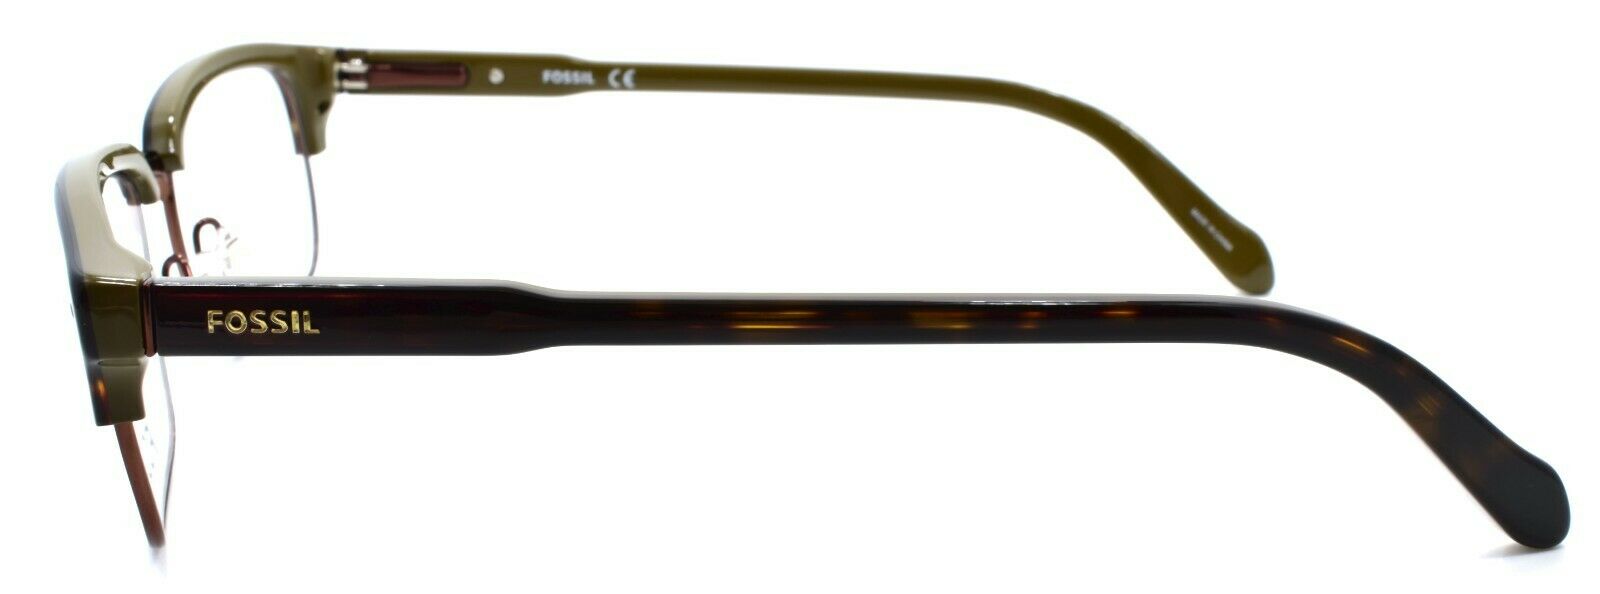 3-Fossil FOS 6050 1L3 Men's Eyeglasses Frames 54-18-145 Havana / Khaki-716737698174-IKSpecs